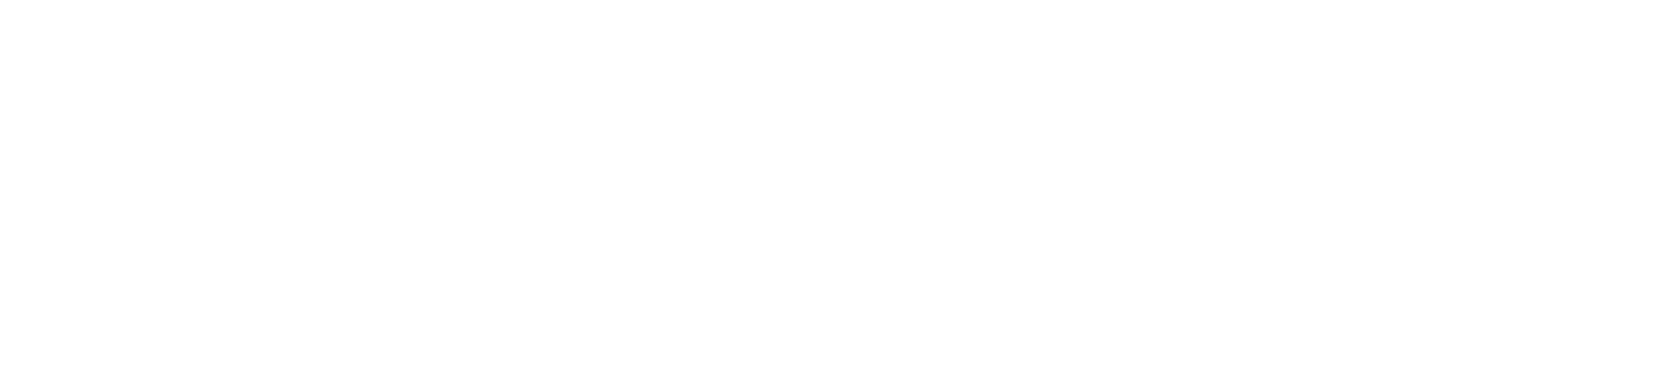 Торцевая заглушка Flexy TOREC GIPS KONTUR 01 IN для профилей Flexy: размер, вид, применение, способ монтажа в Беларуси (РБ)